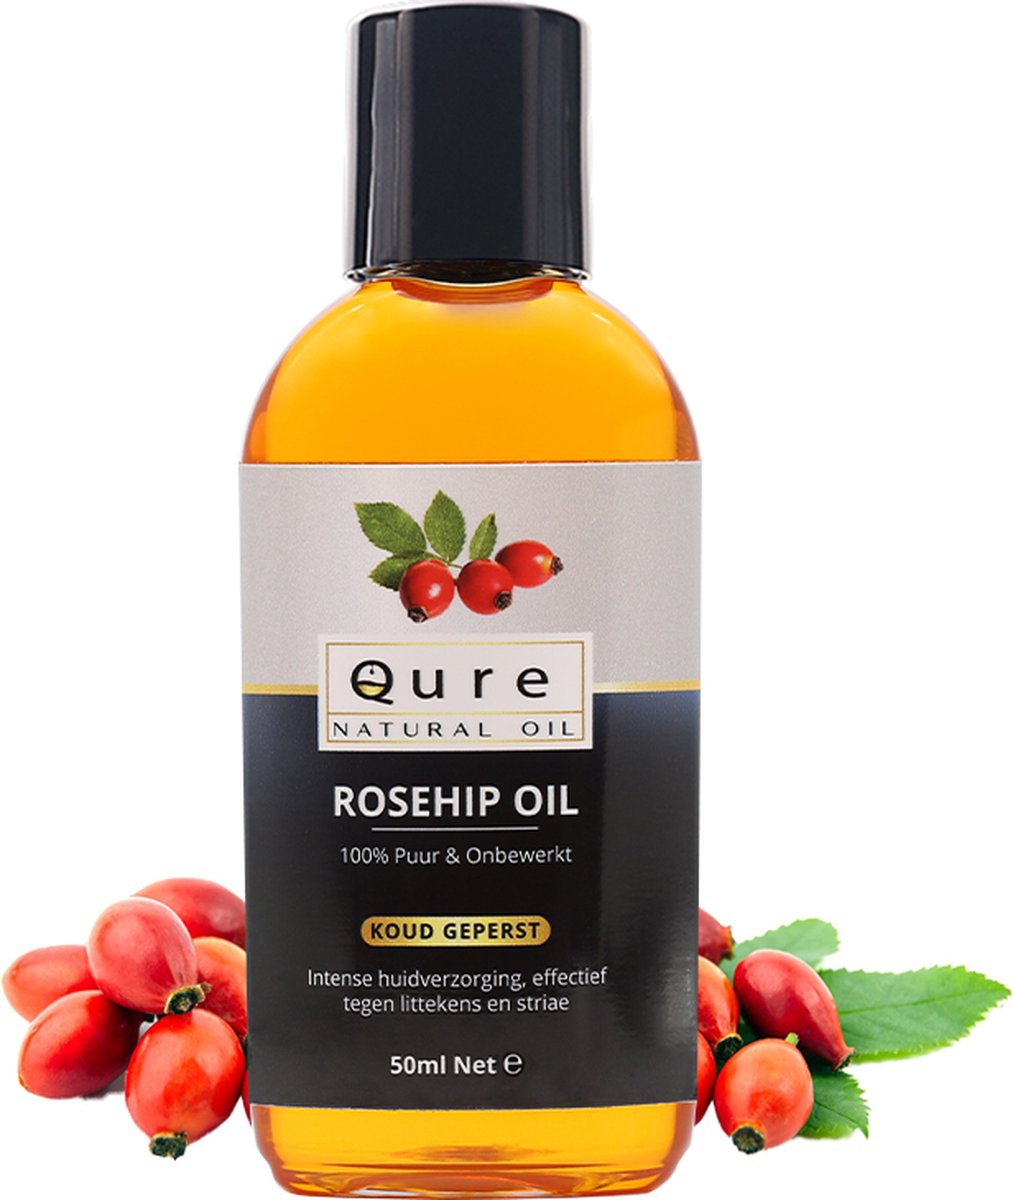 Rozenbottelolie 50ml | Biologisch | 100% Puur & Onbewerkt | Rosehip Oil voor huid, haar en lichaam